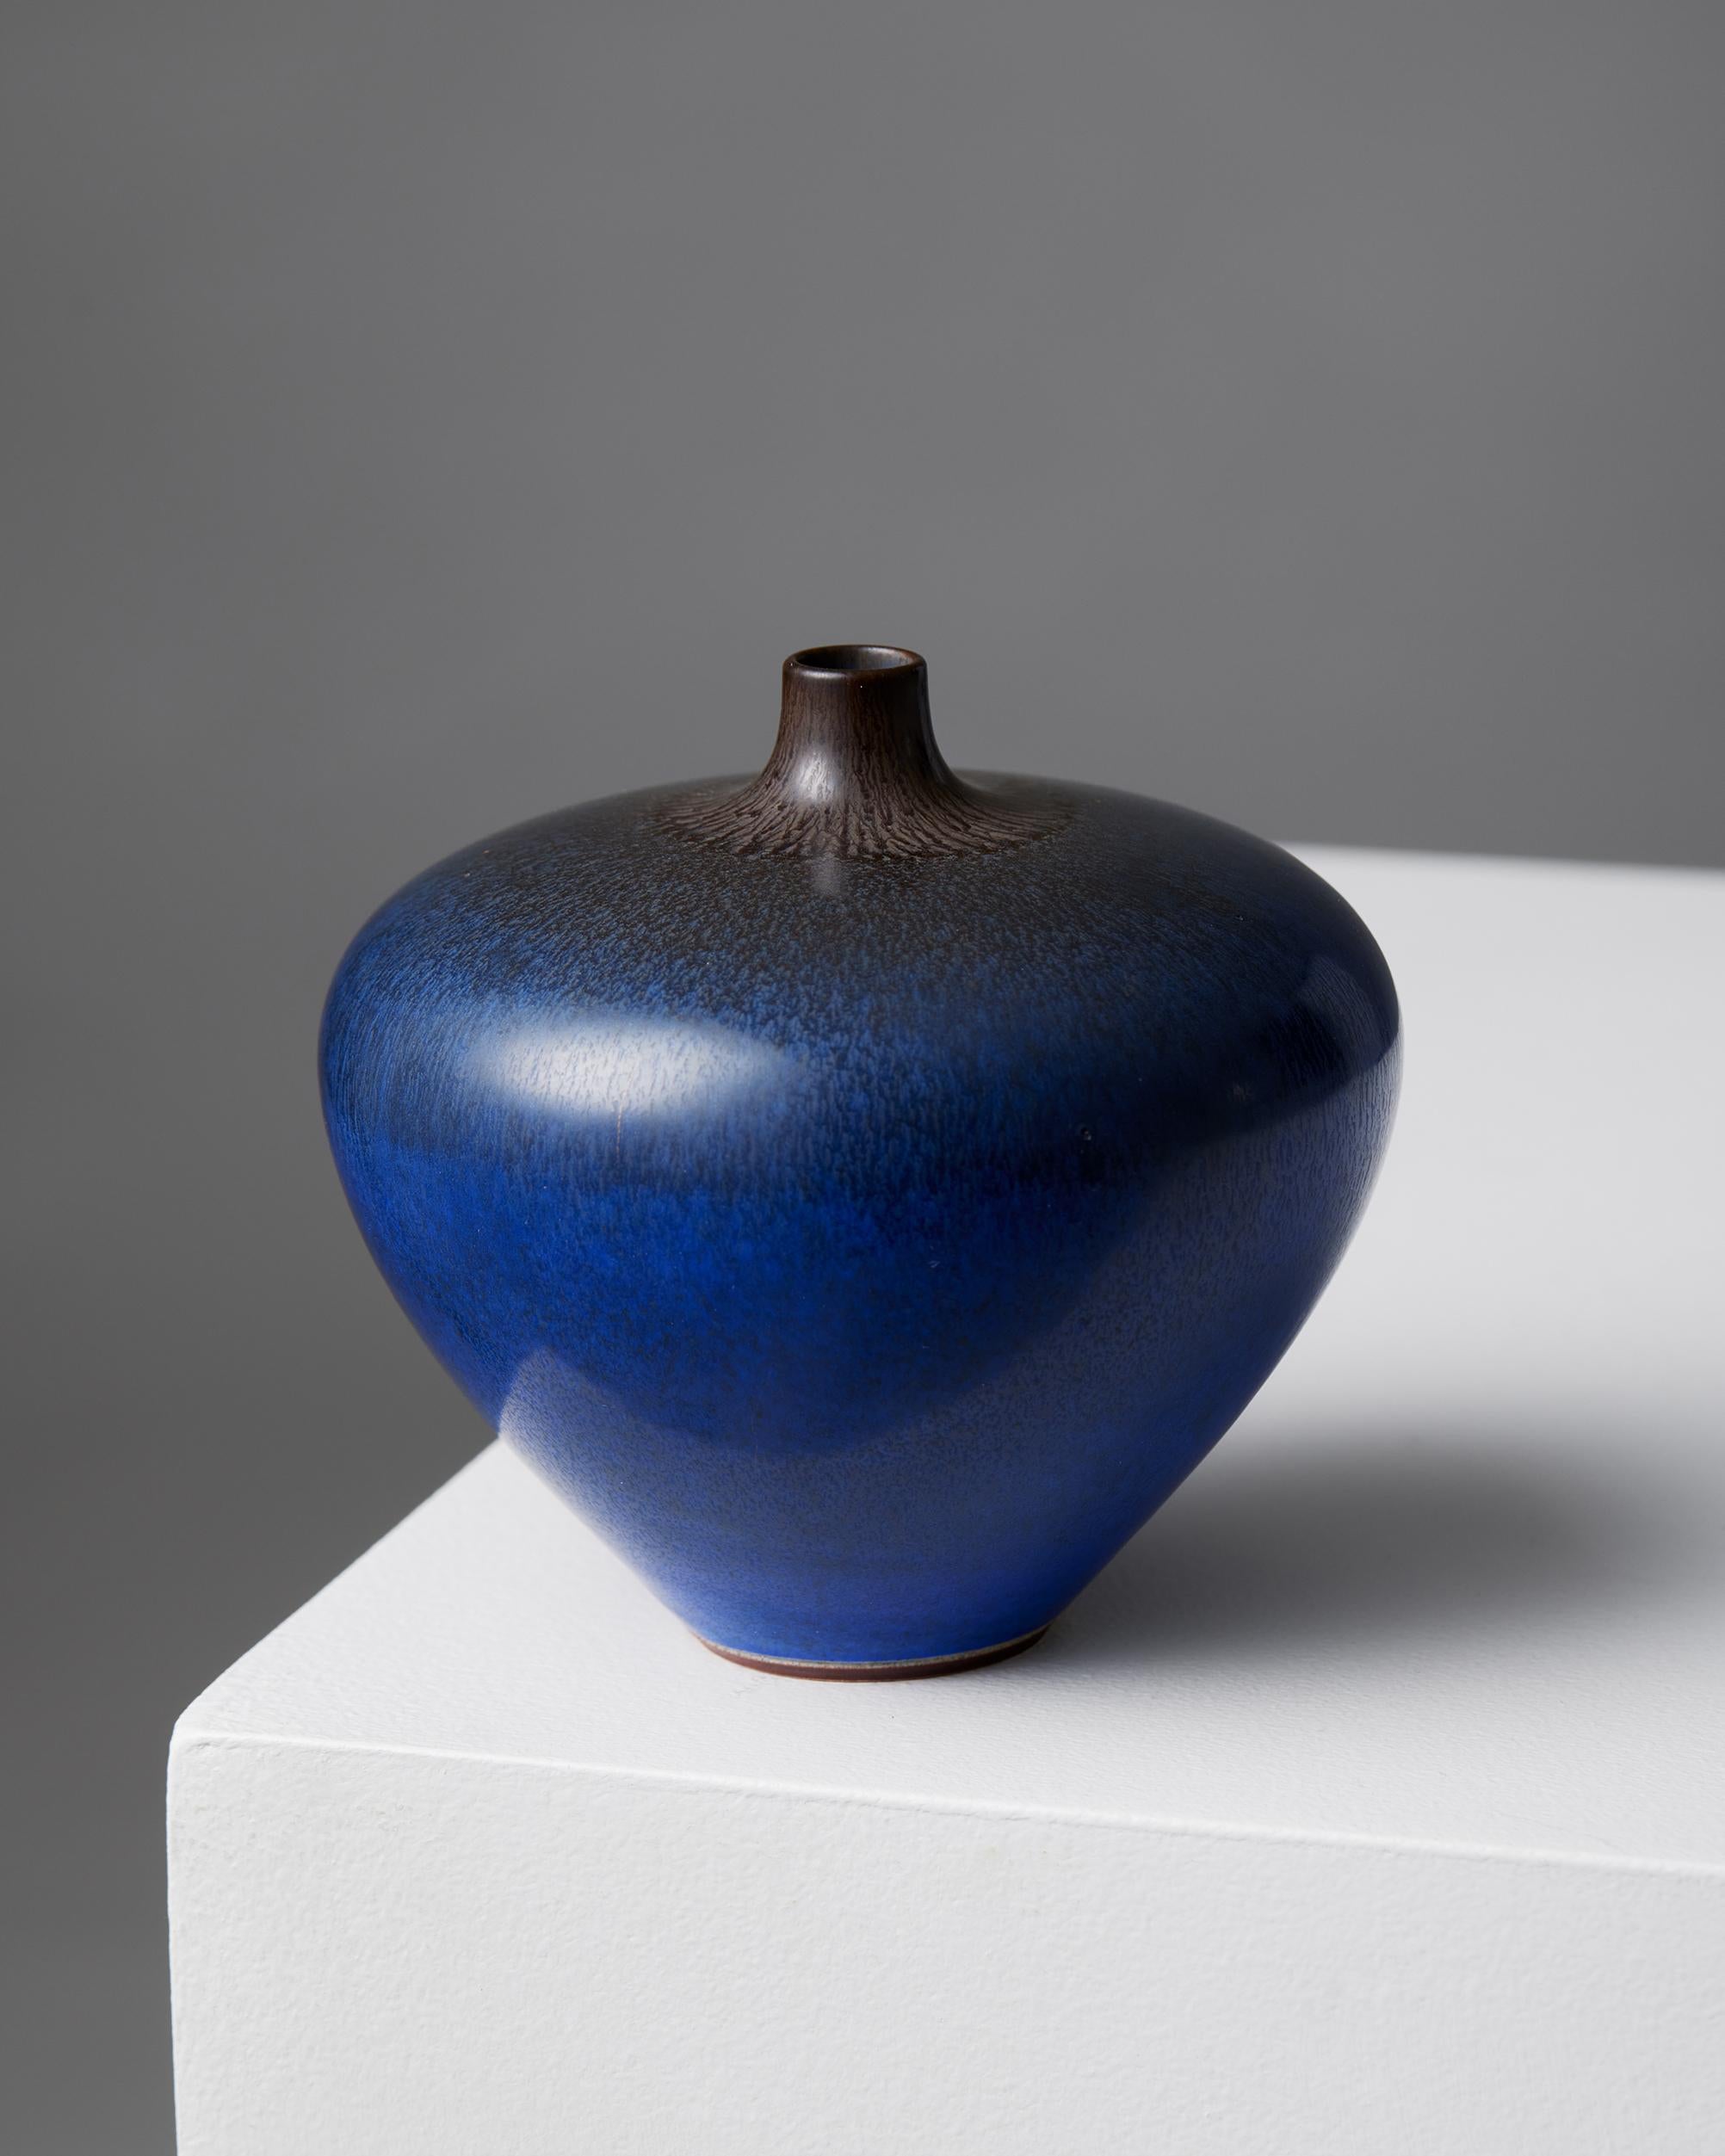 Vase de Berndt Friberg pour Gustavsberg,
Suède, 1954.

Grès.

Signé.

Berndt Friberg est né dans la ville de Townes, dans le sud de la Suède. Il est issu d'une longue lignée de céramistes, dans une région imprégnée de la tradition de la poterie